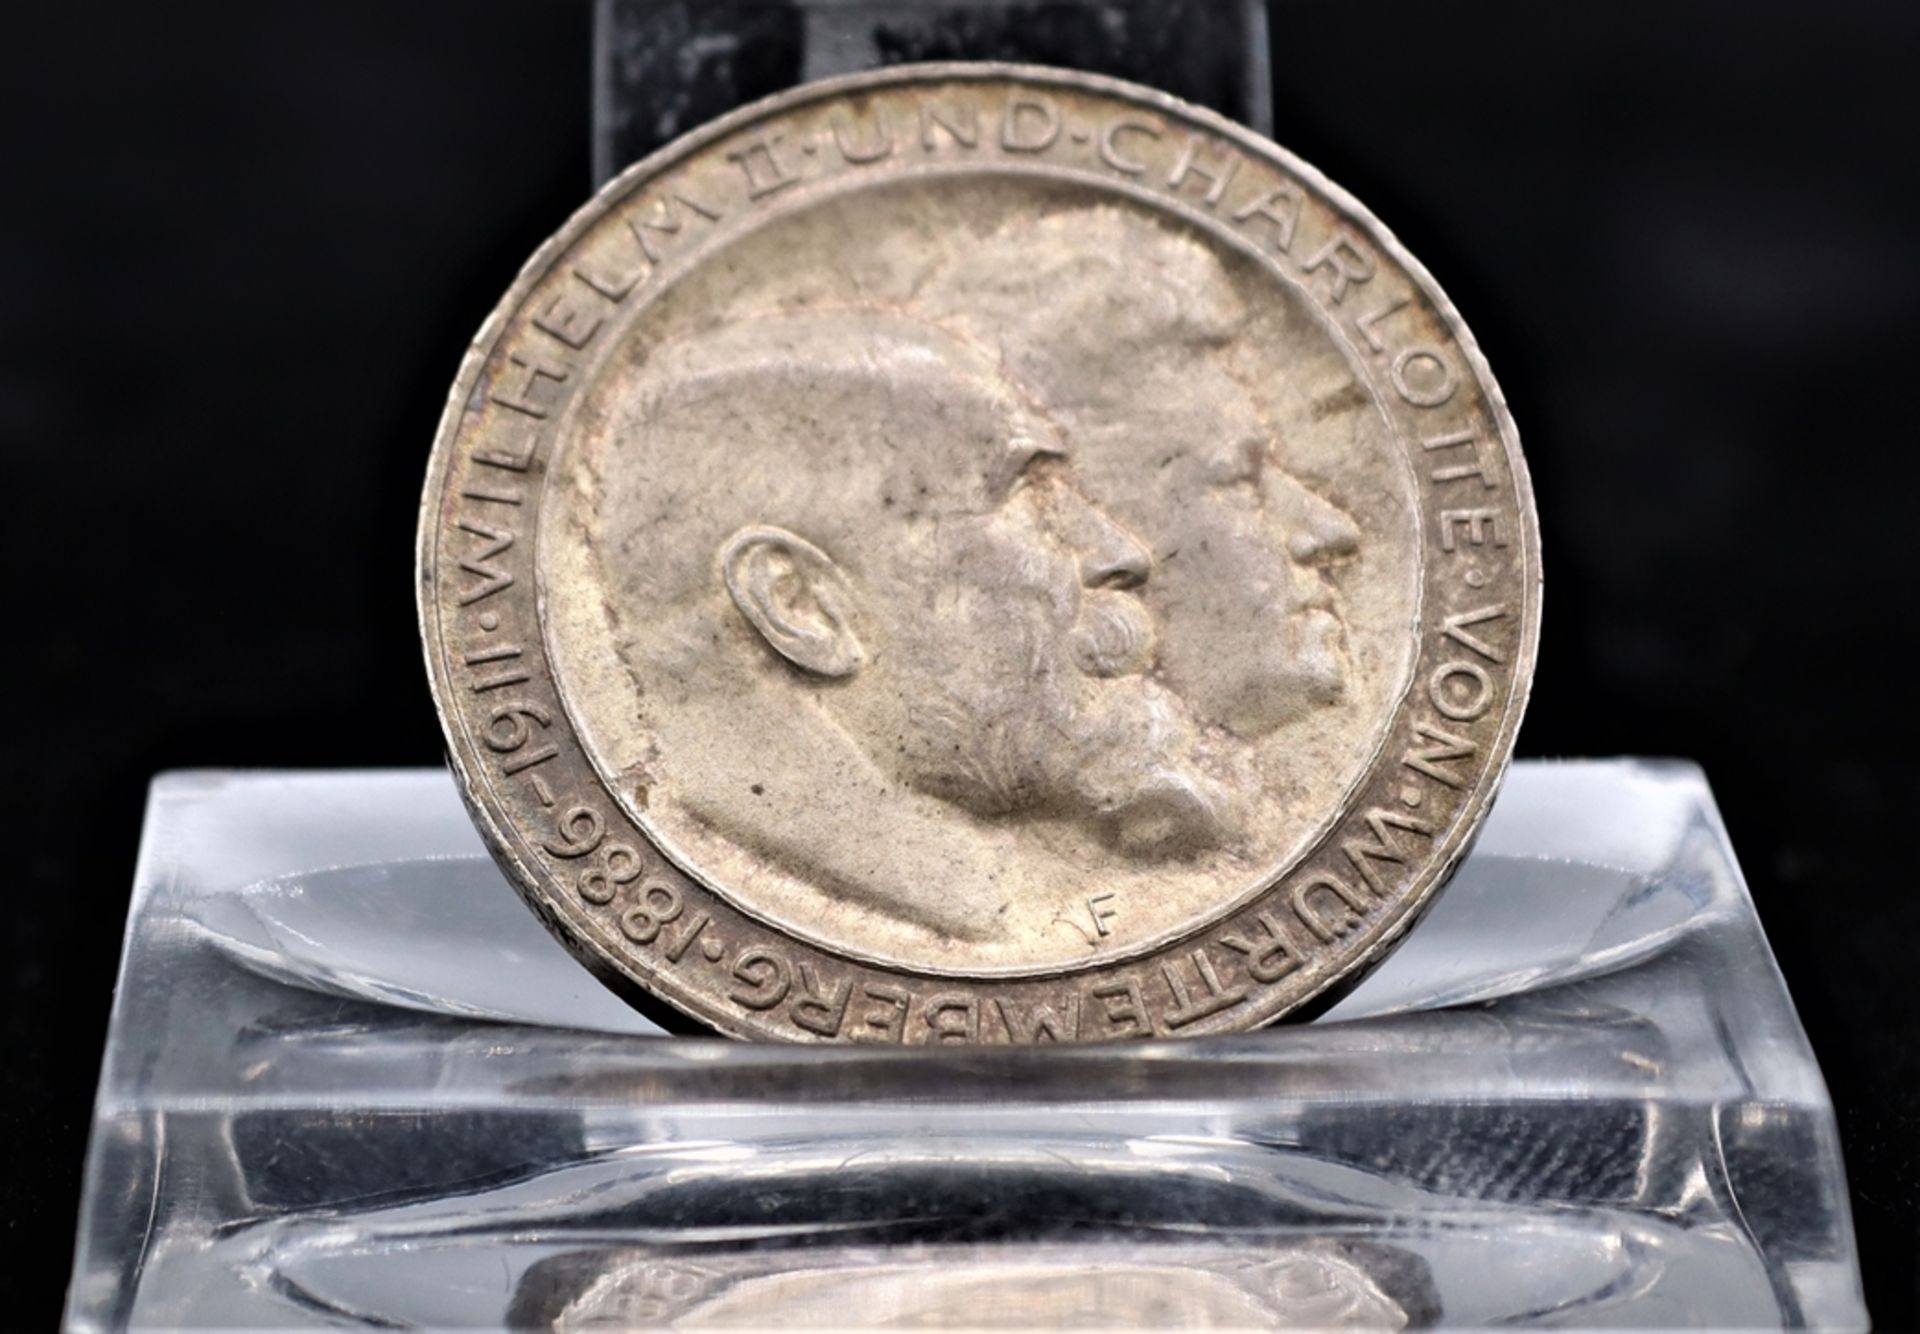 Silbermünze 3 Reichsmark 1911 Württemberg, Prägung F für Stuttgart, Umlaufmünze, - Bild 2 aus 2